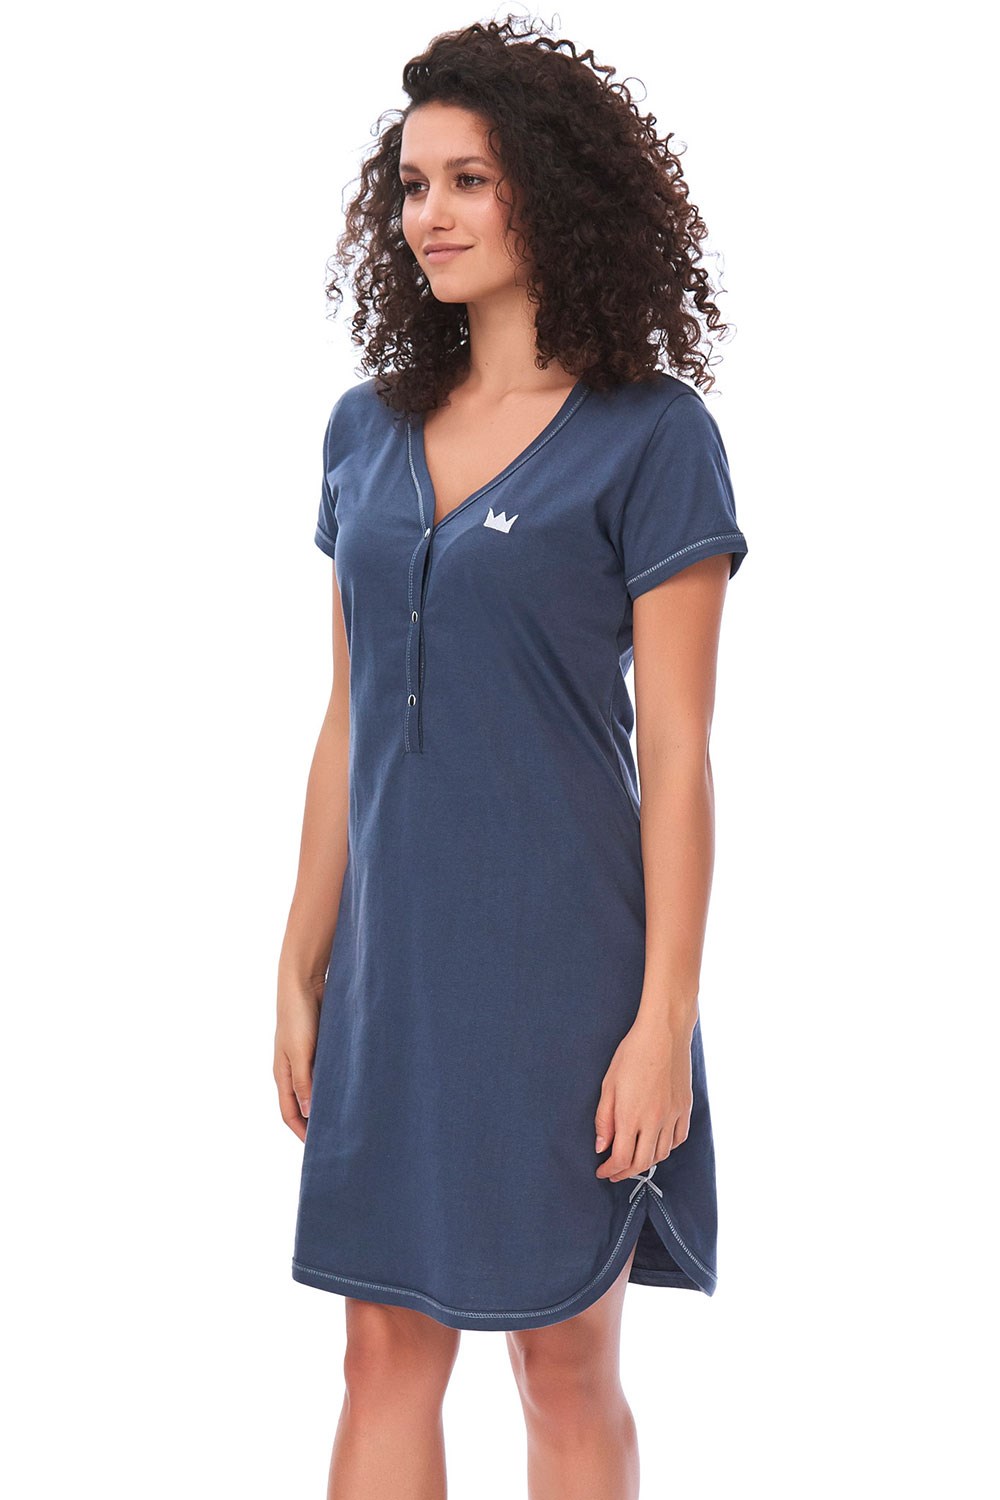 Noční košile Dn-nightwear TCB.9505 - Výprodej